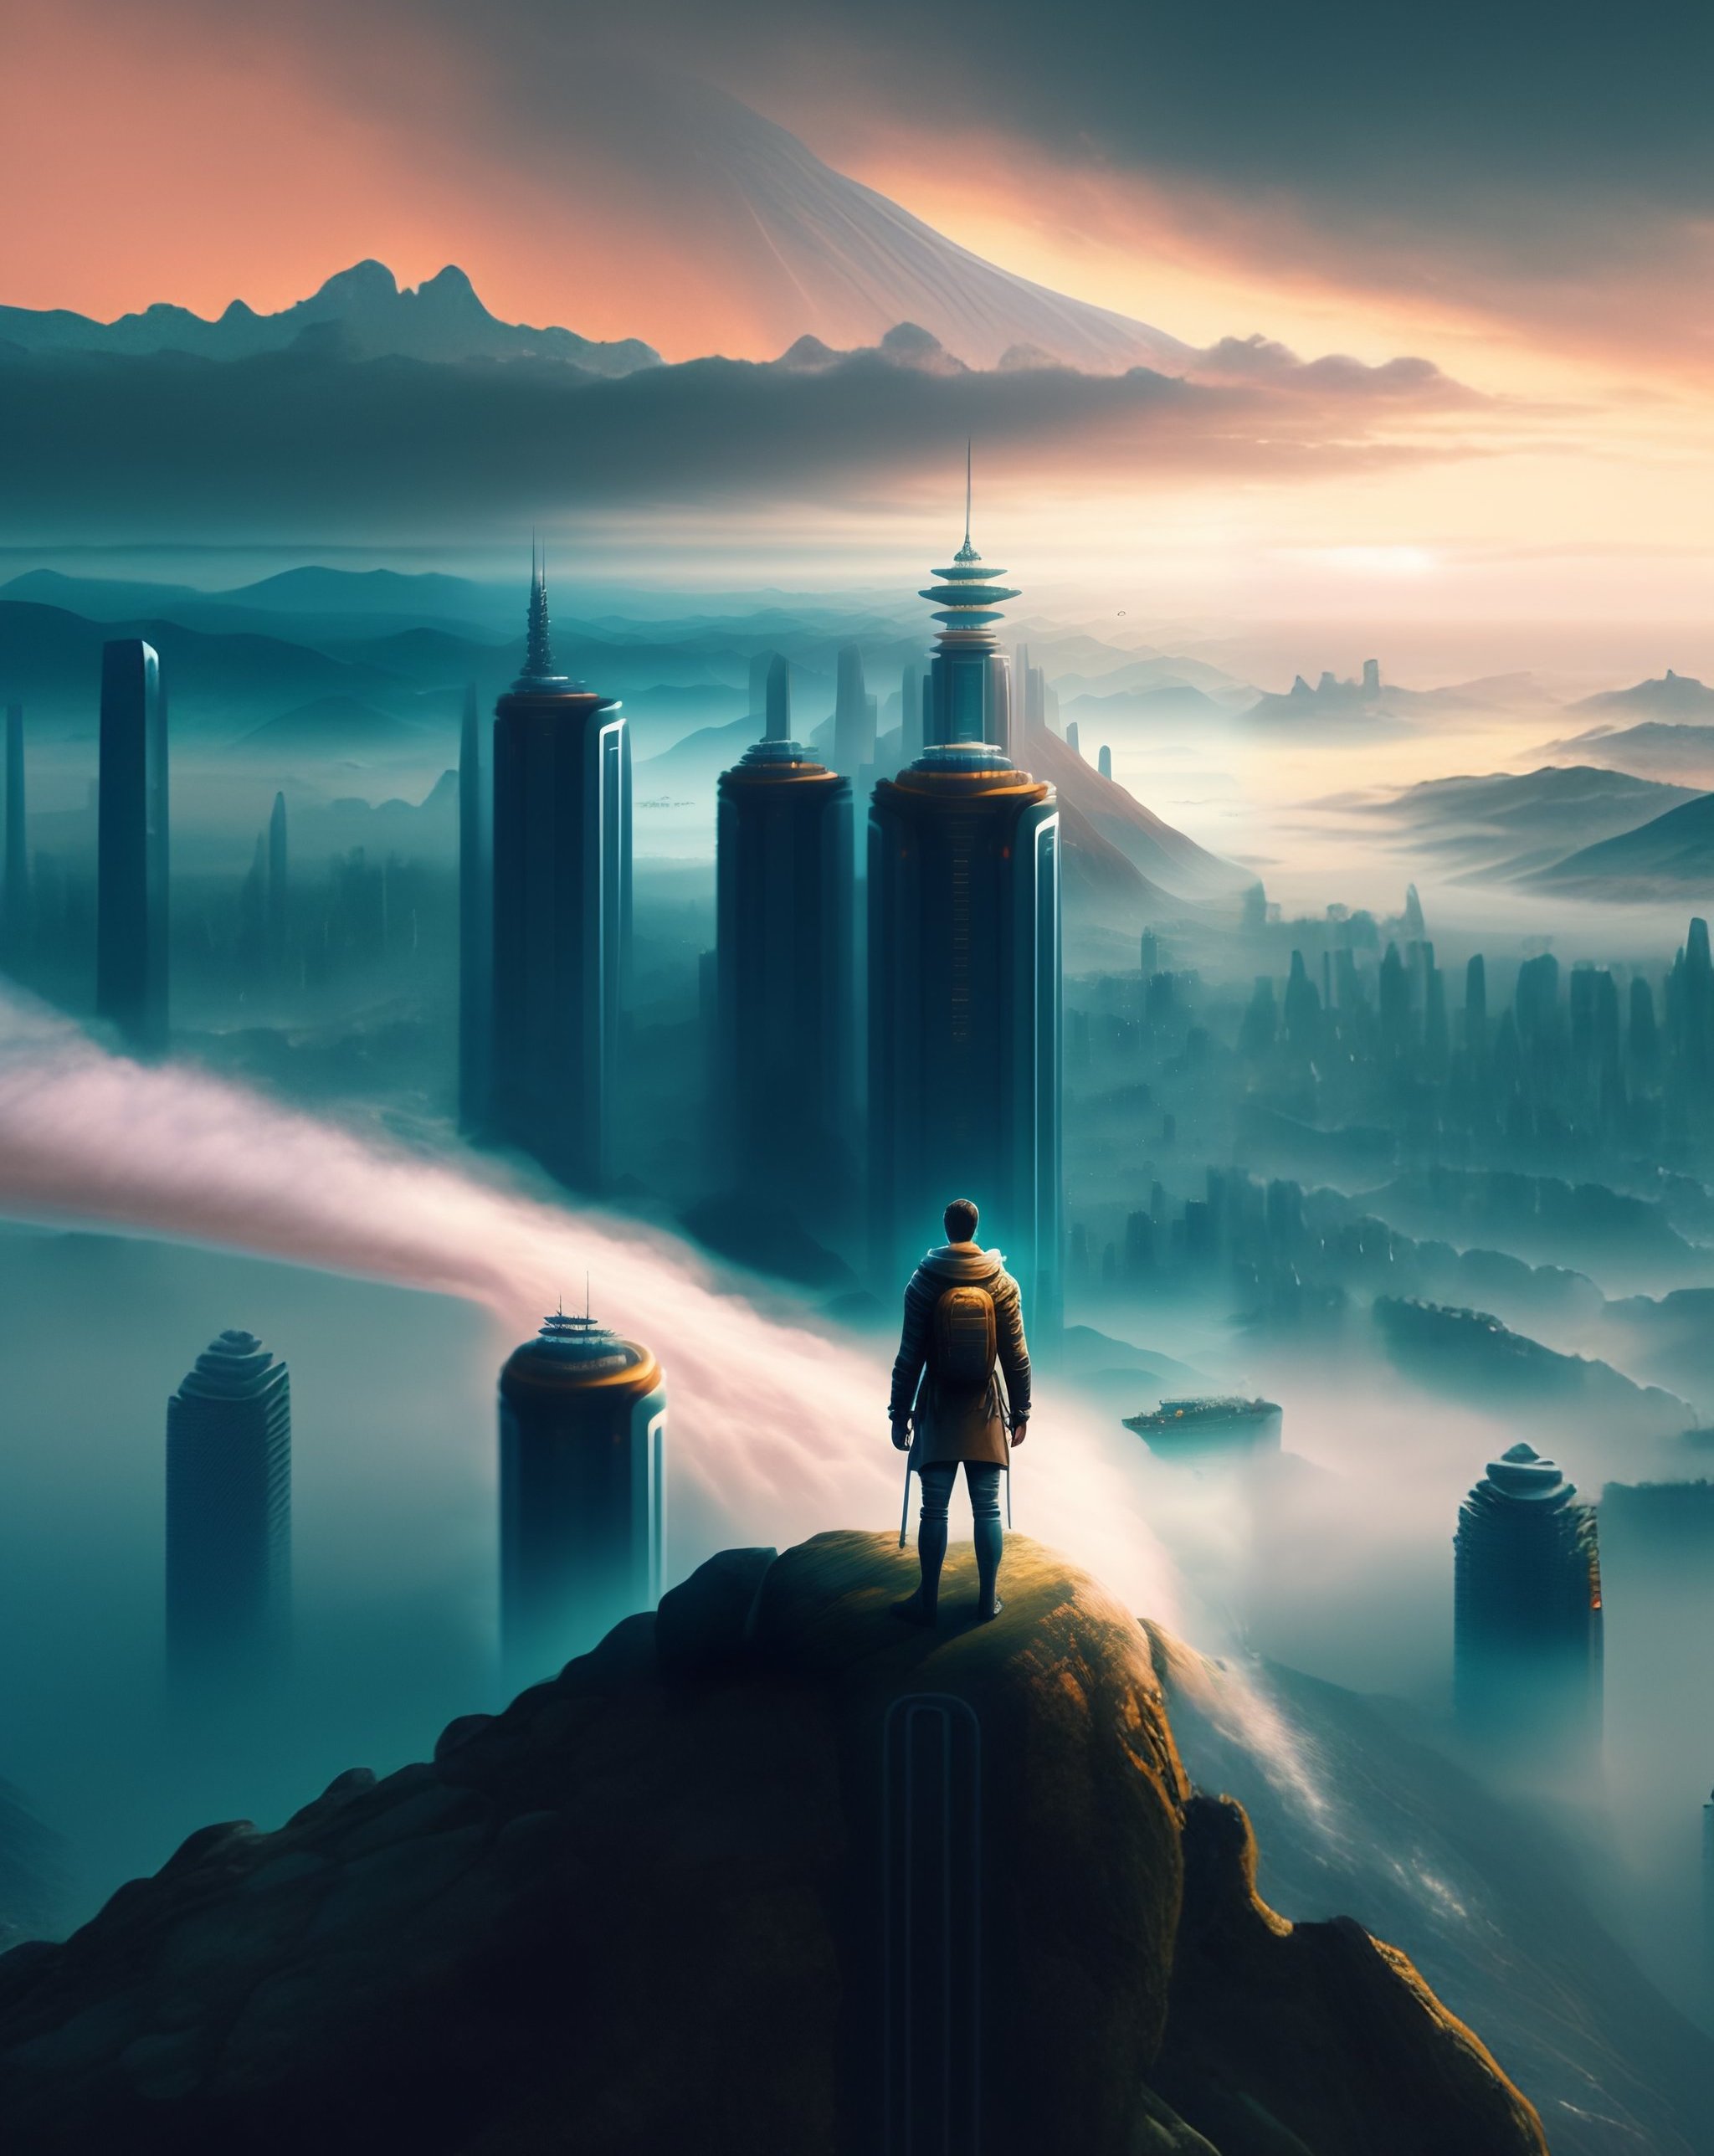 Wanderer above the Sea of Futuristic Megacity